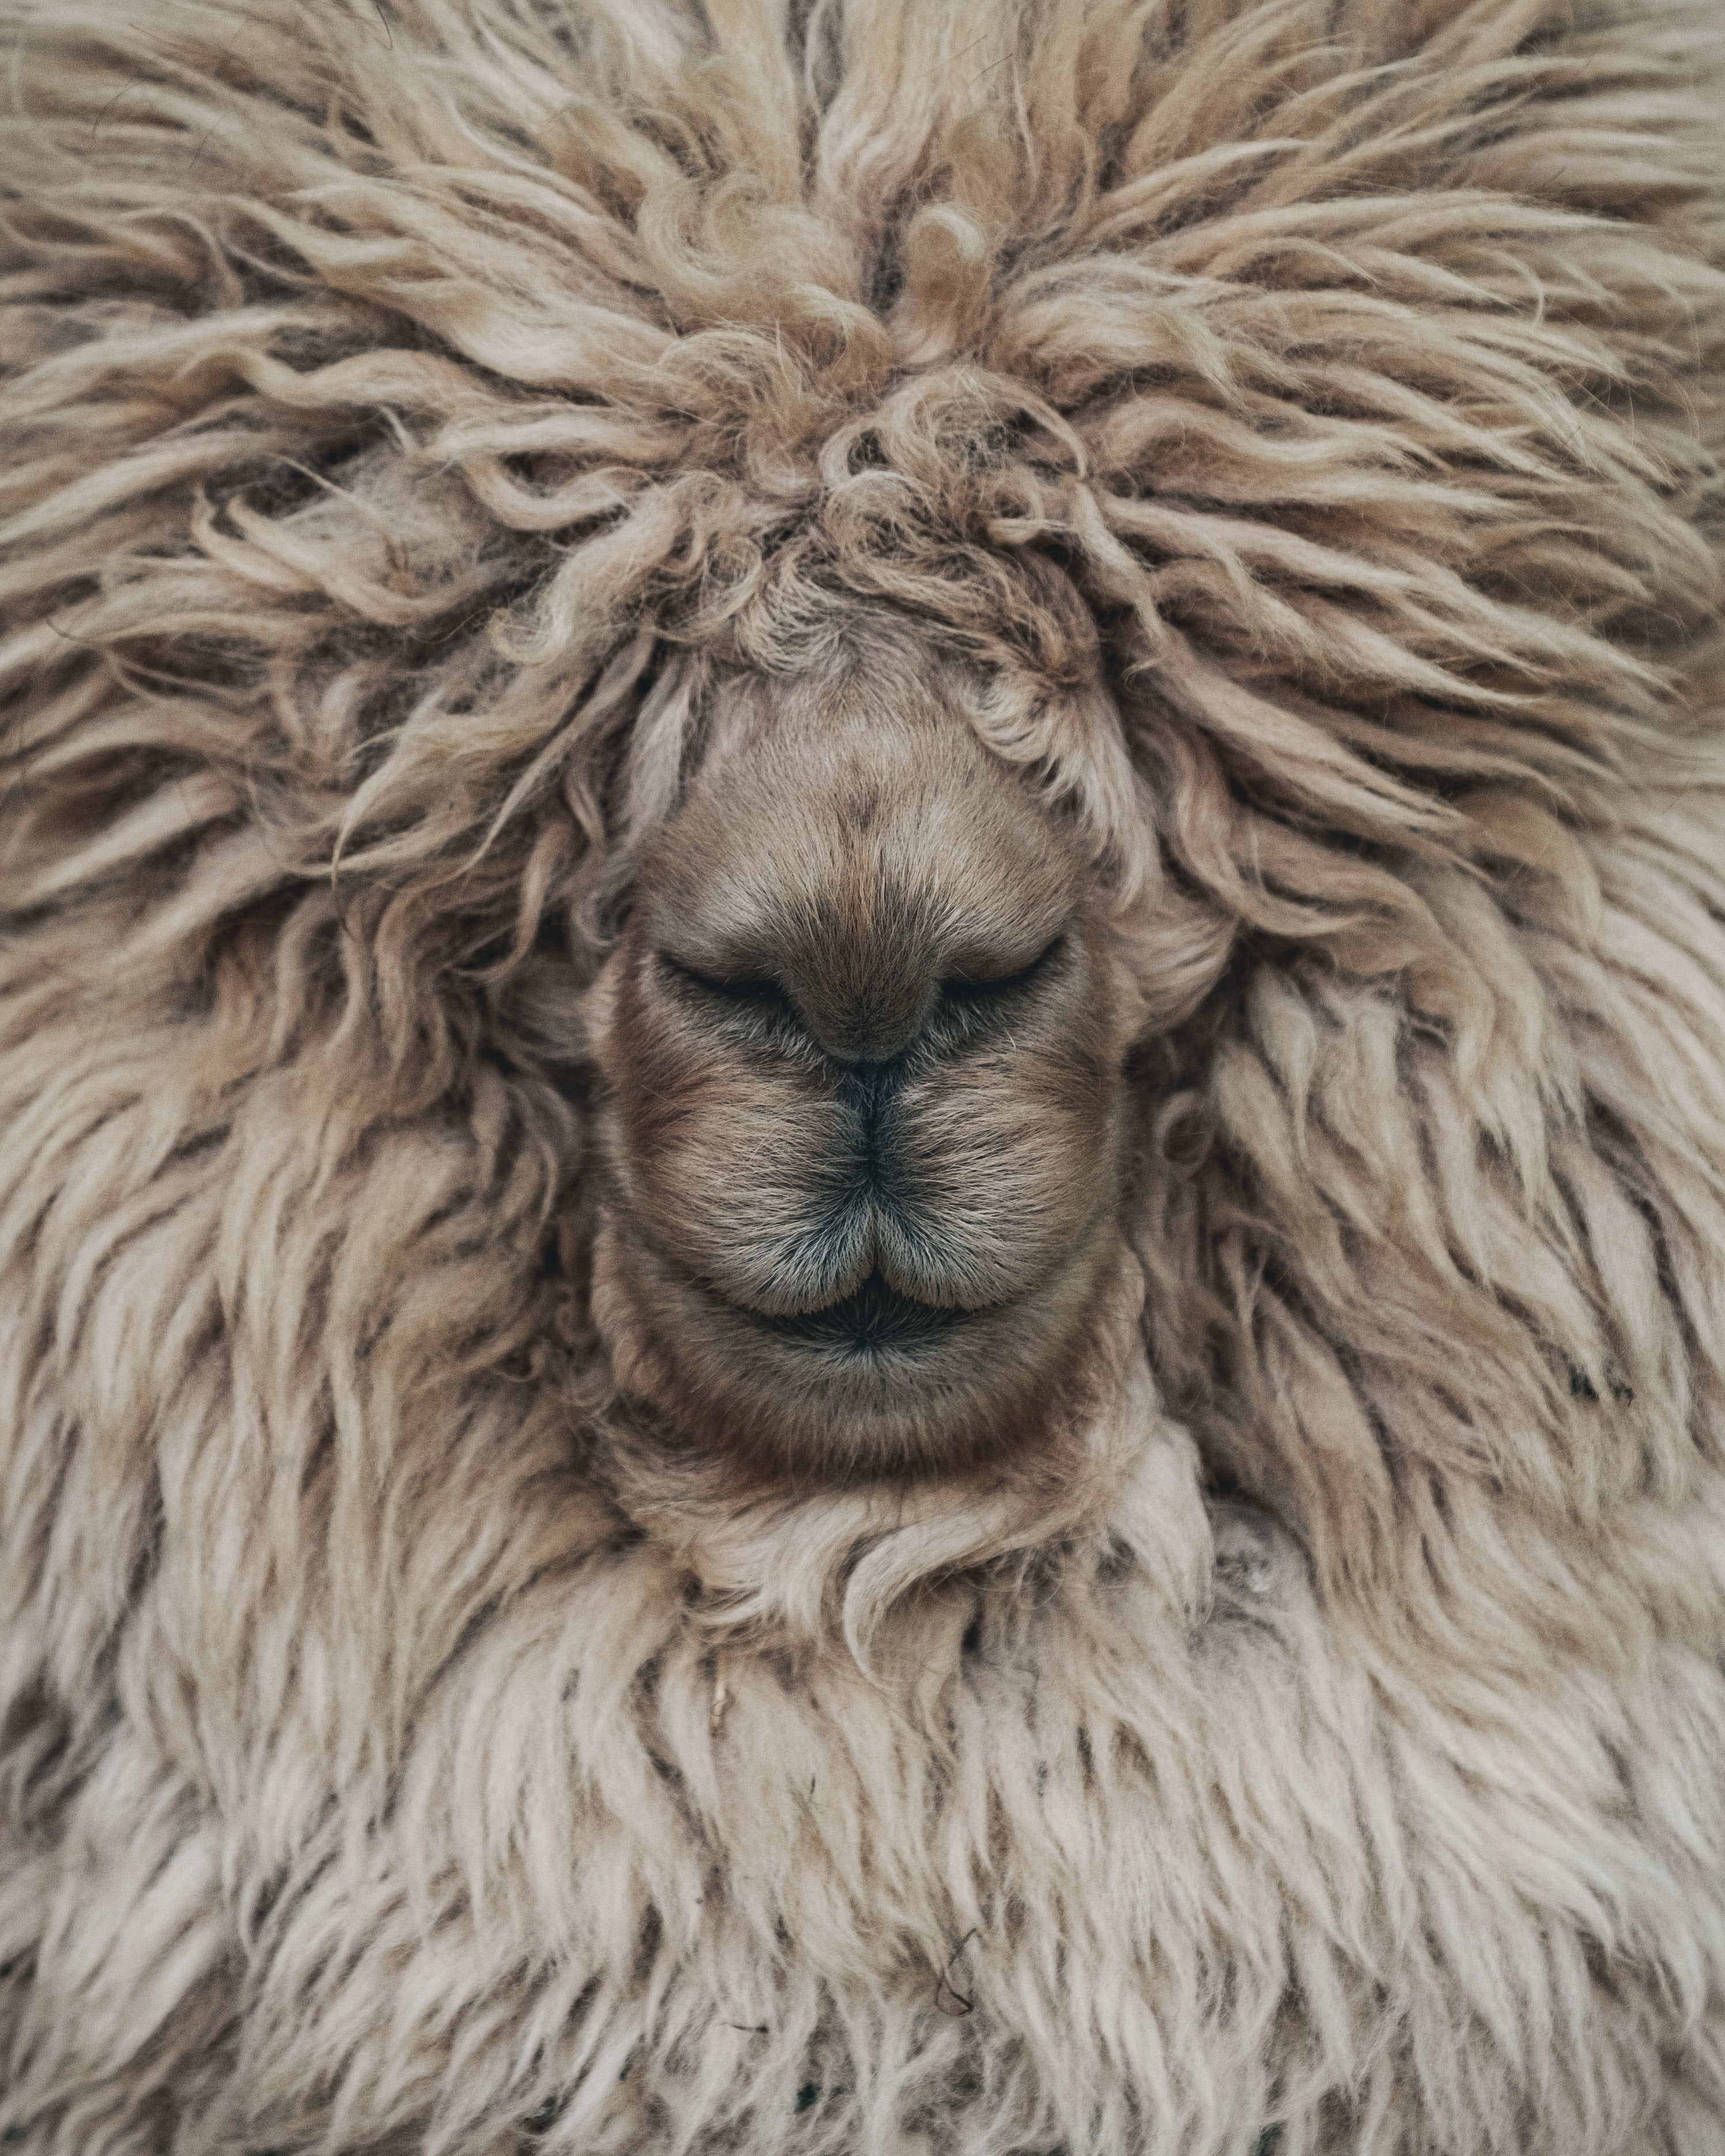 Overgrown wool